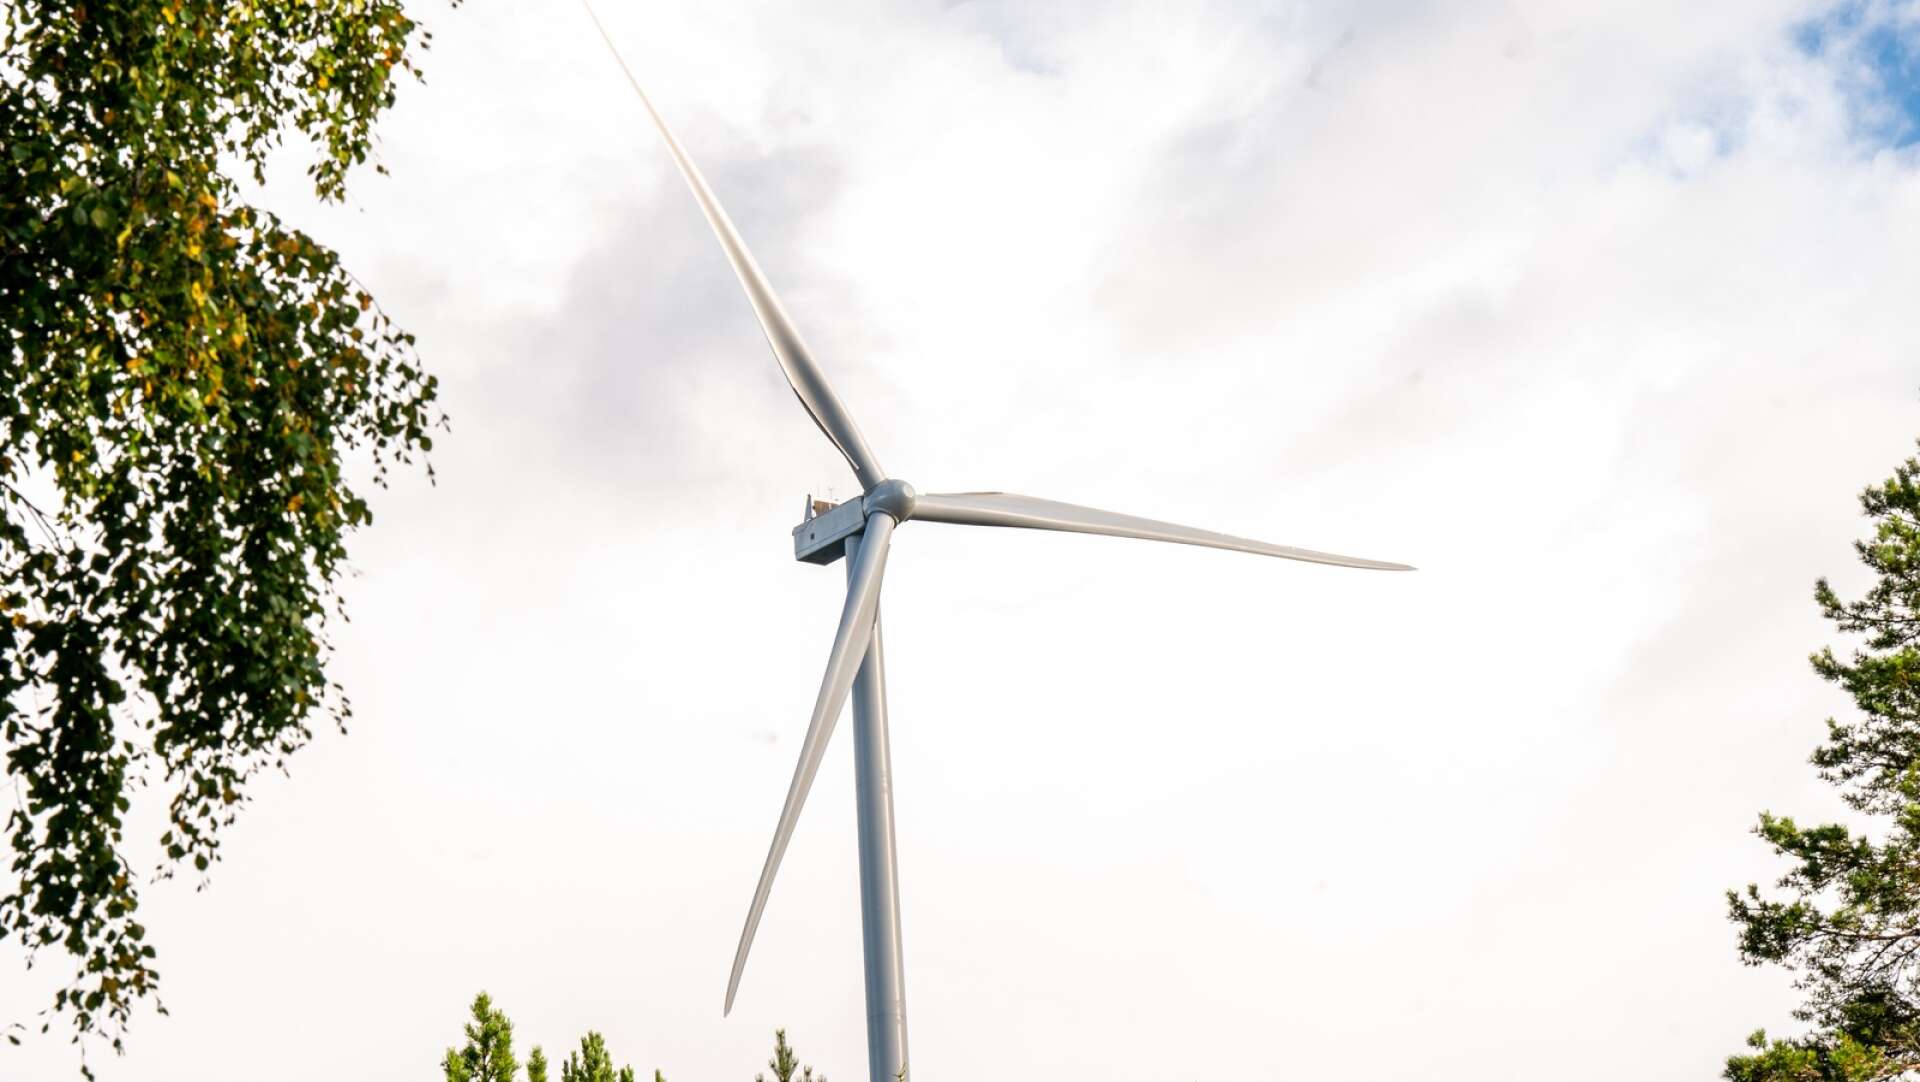 Snart uppförs vindpark Fågelås med sju vindkraftverk på 250 meters höjd. 